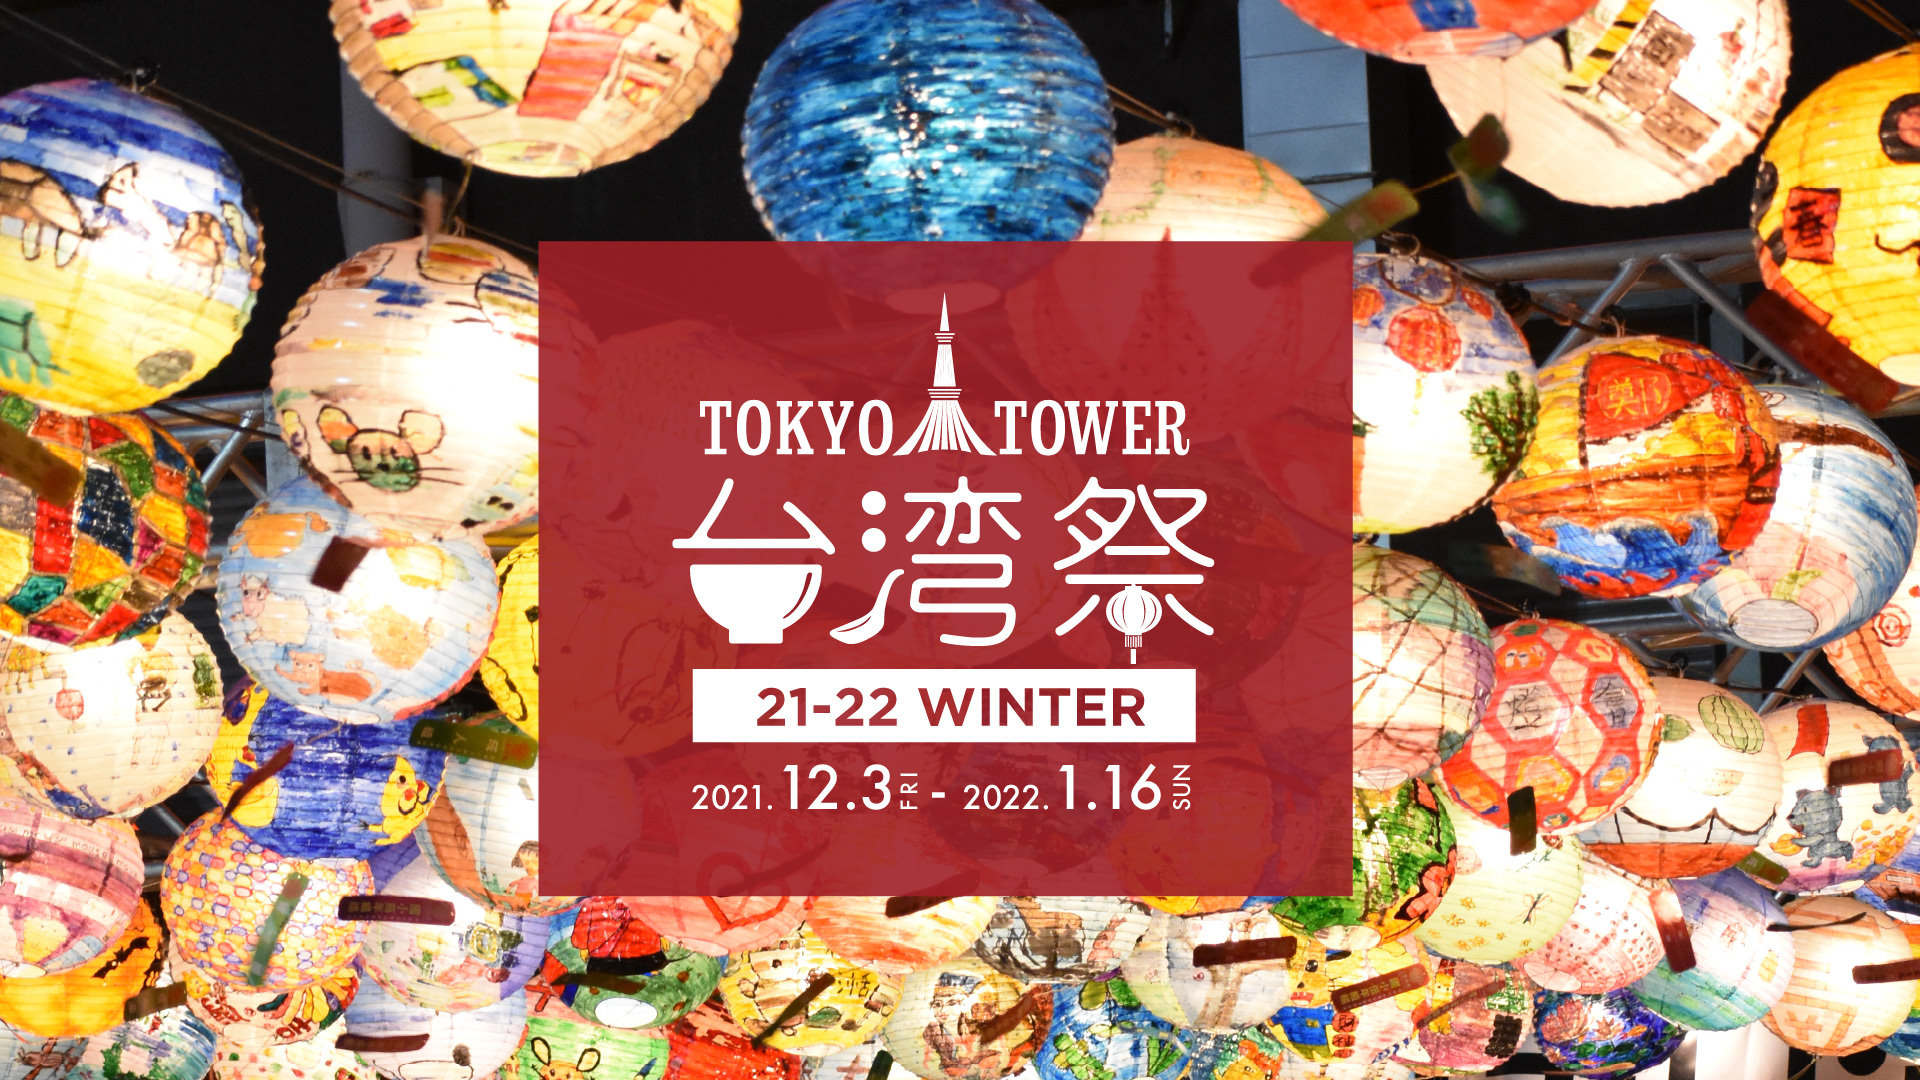 『東京タワー台湾祭21-22 WINTER』
12月3日(金)～1月16日(日)　開催！